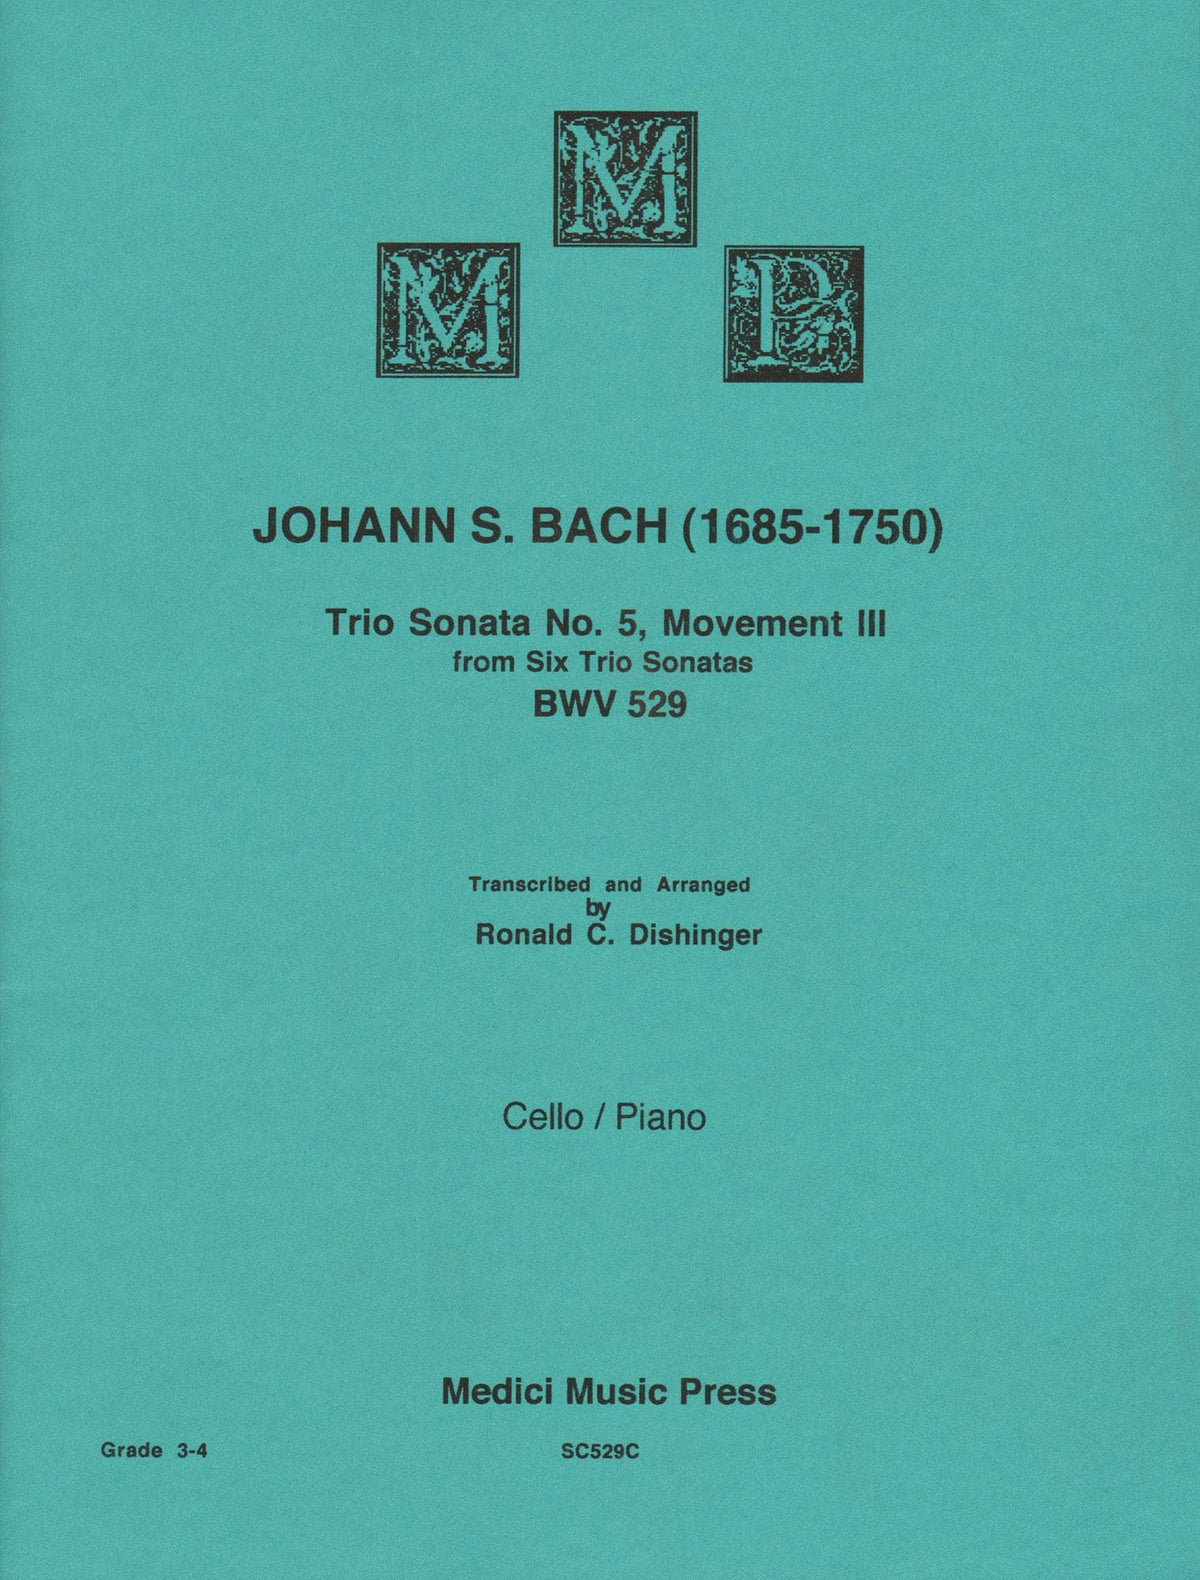 Bach, J.S. - Trio Sonata No. 5 Movement III, from Six Trio Sonatas, BWV 529 - for Cello and Piano - arr. by Dishinger - Medici Music Press